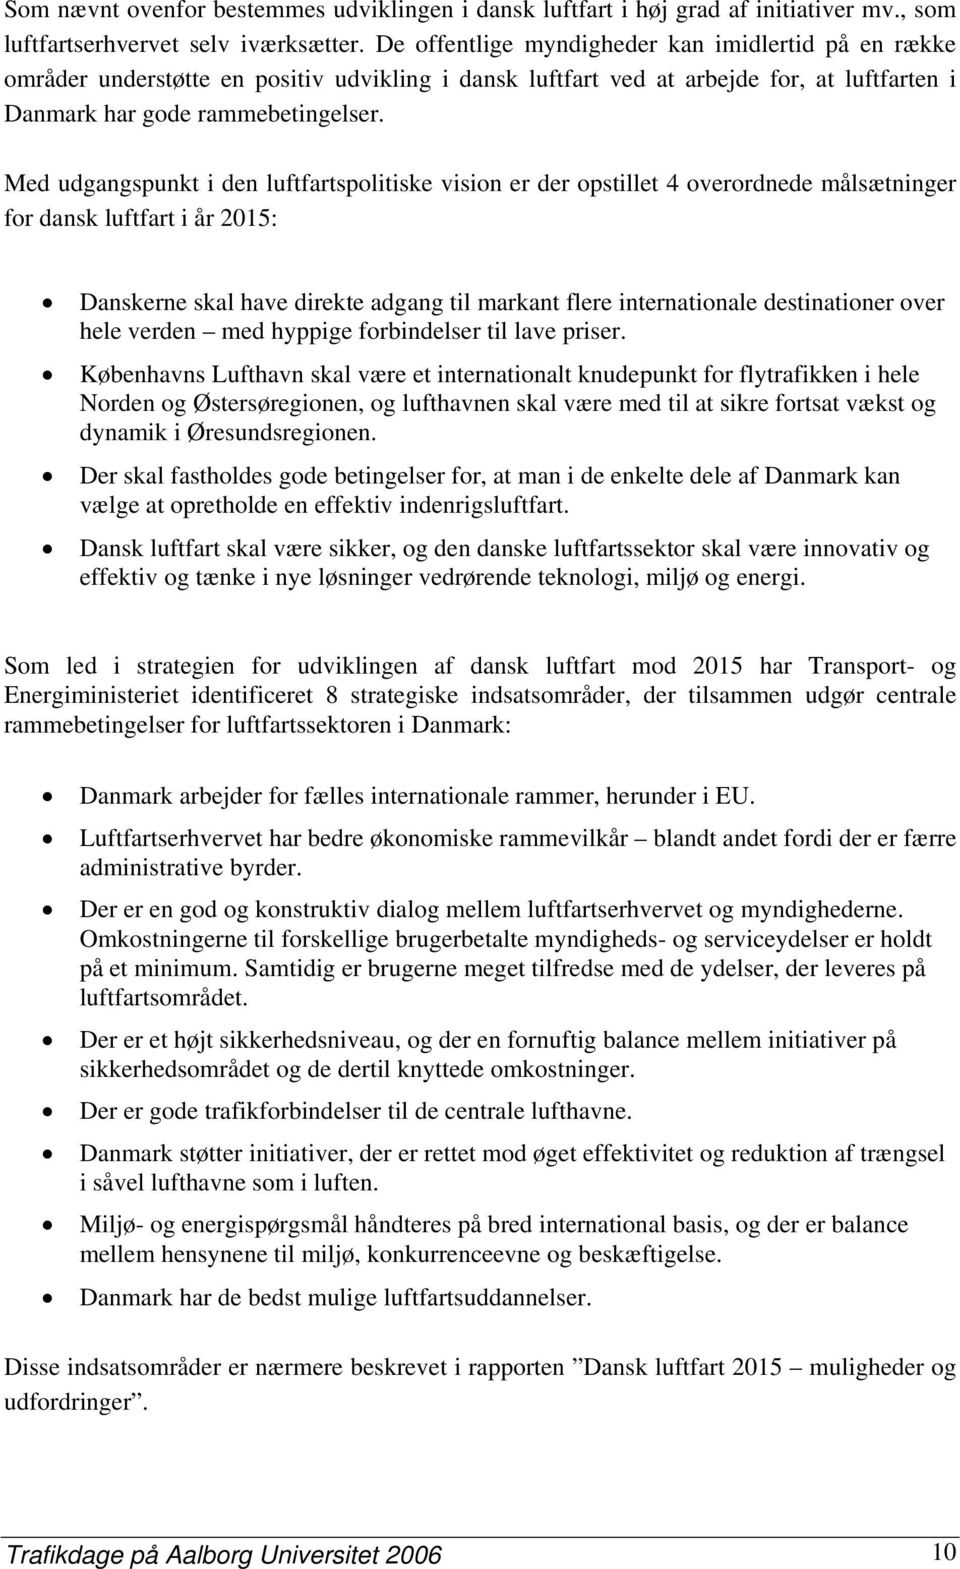 Med udgangspunkt i den luftfartspolitiske vision er der opstillet 4 overordnede målsætninger for dansk luftfart i år 2015: Danskerne skal have direkte adgang til markant flere internationale